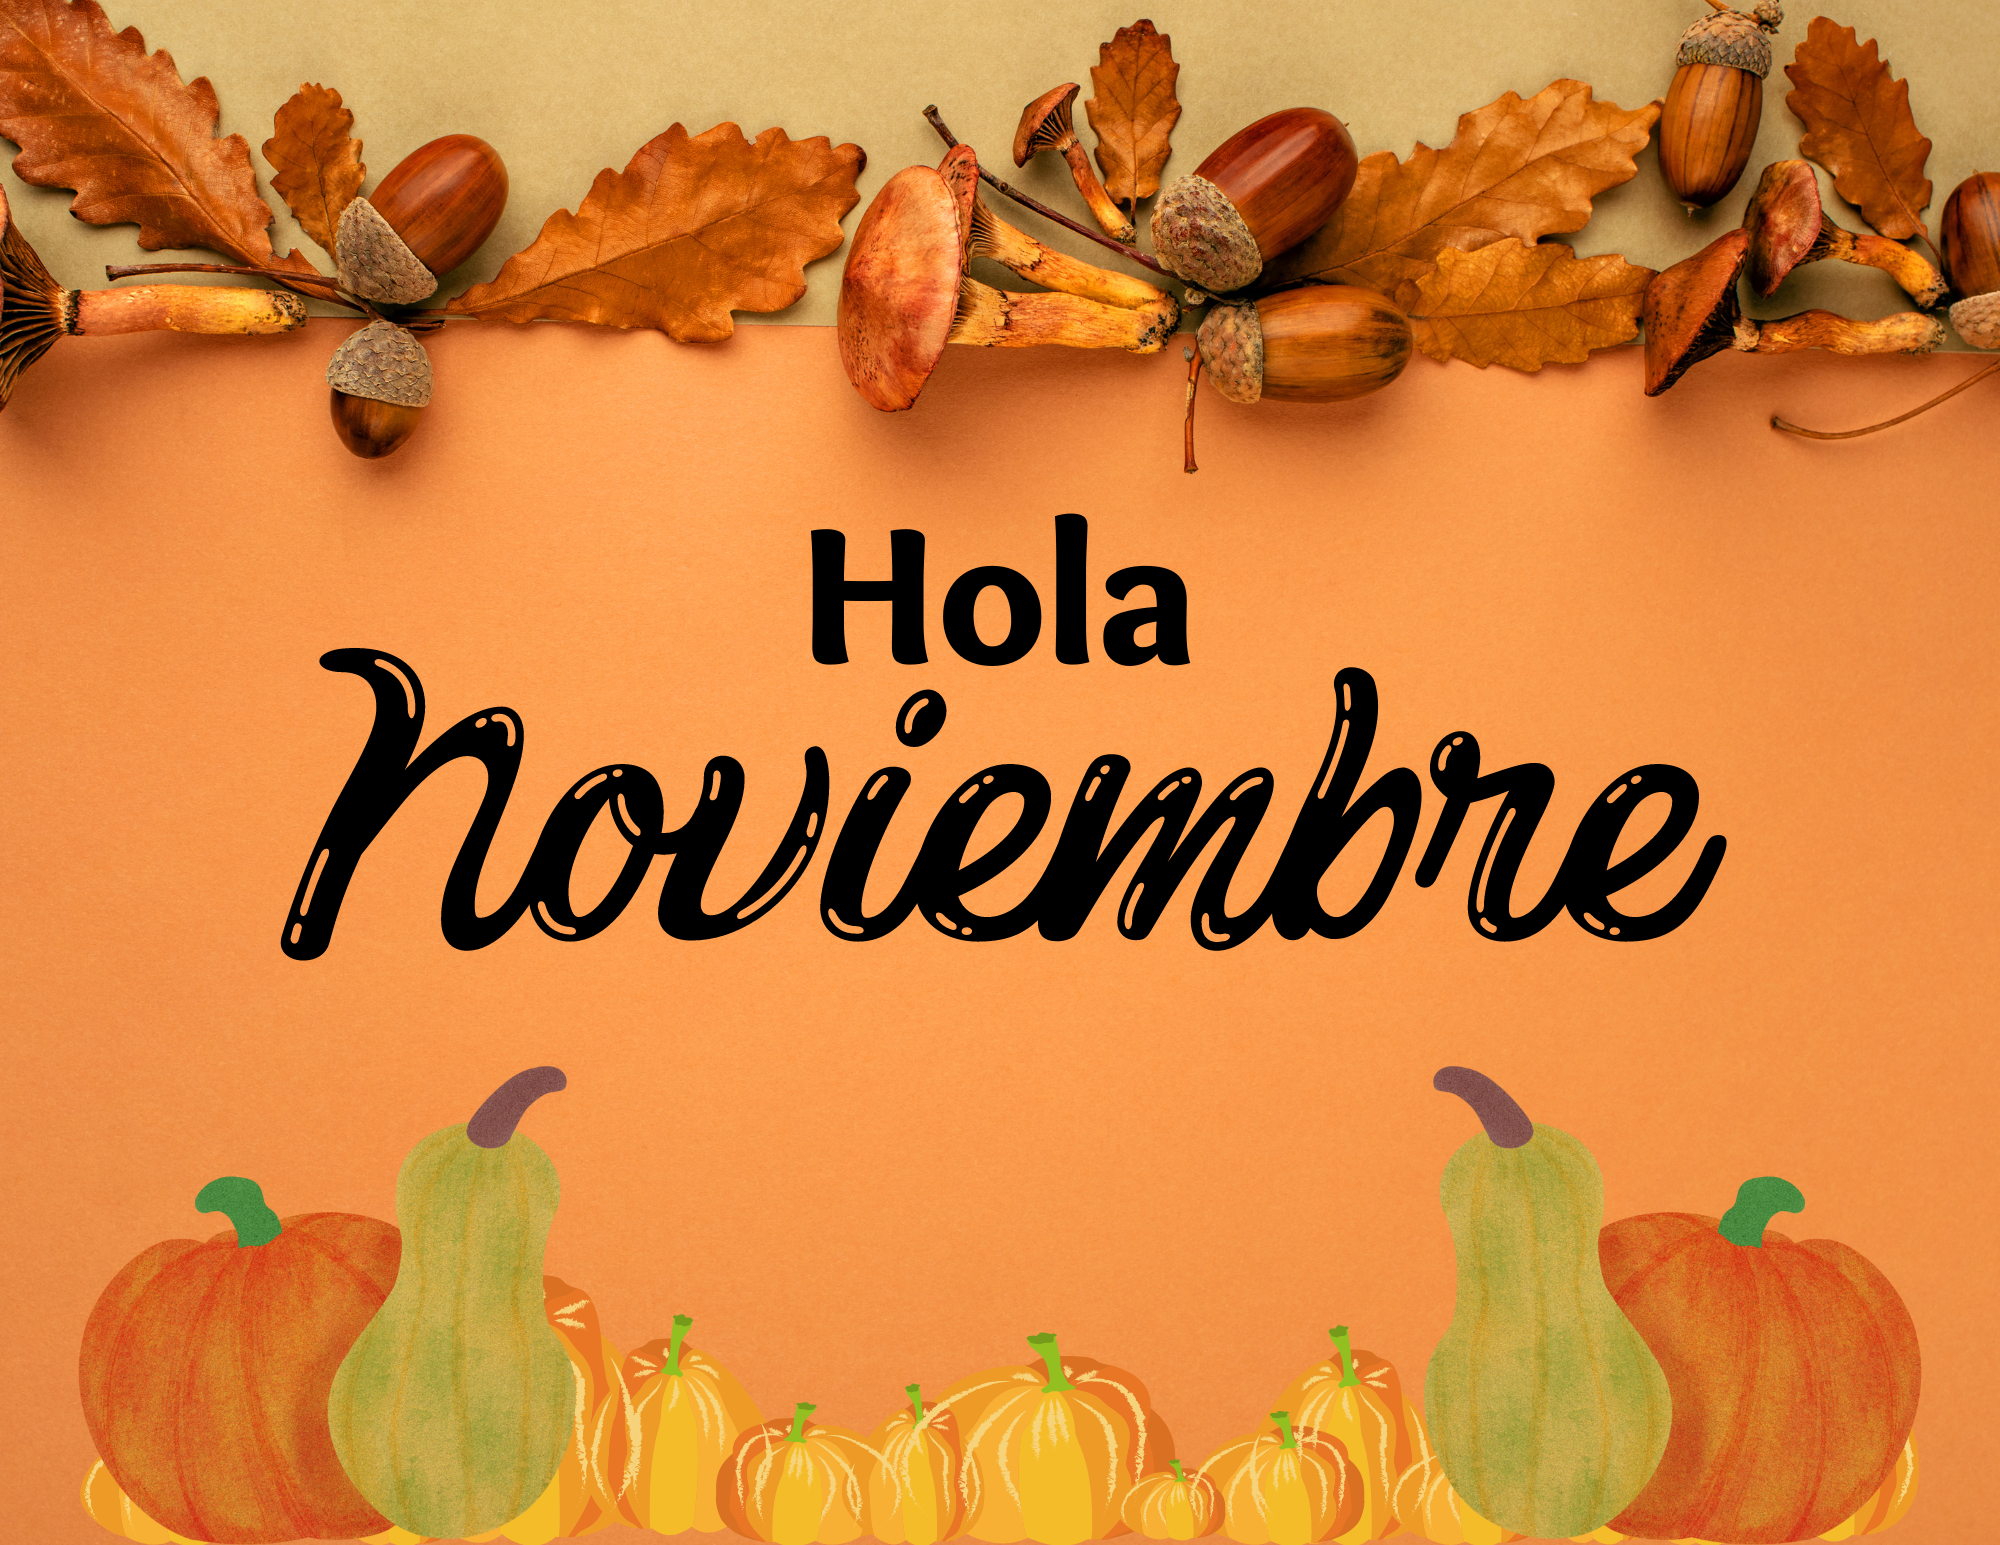 Imágenes llamativas con "Hola Noviembre" en español.
